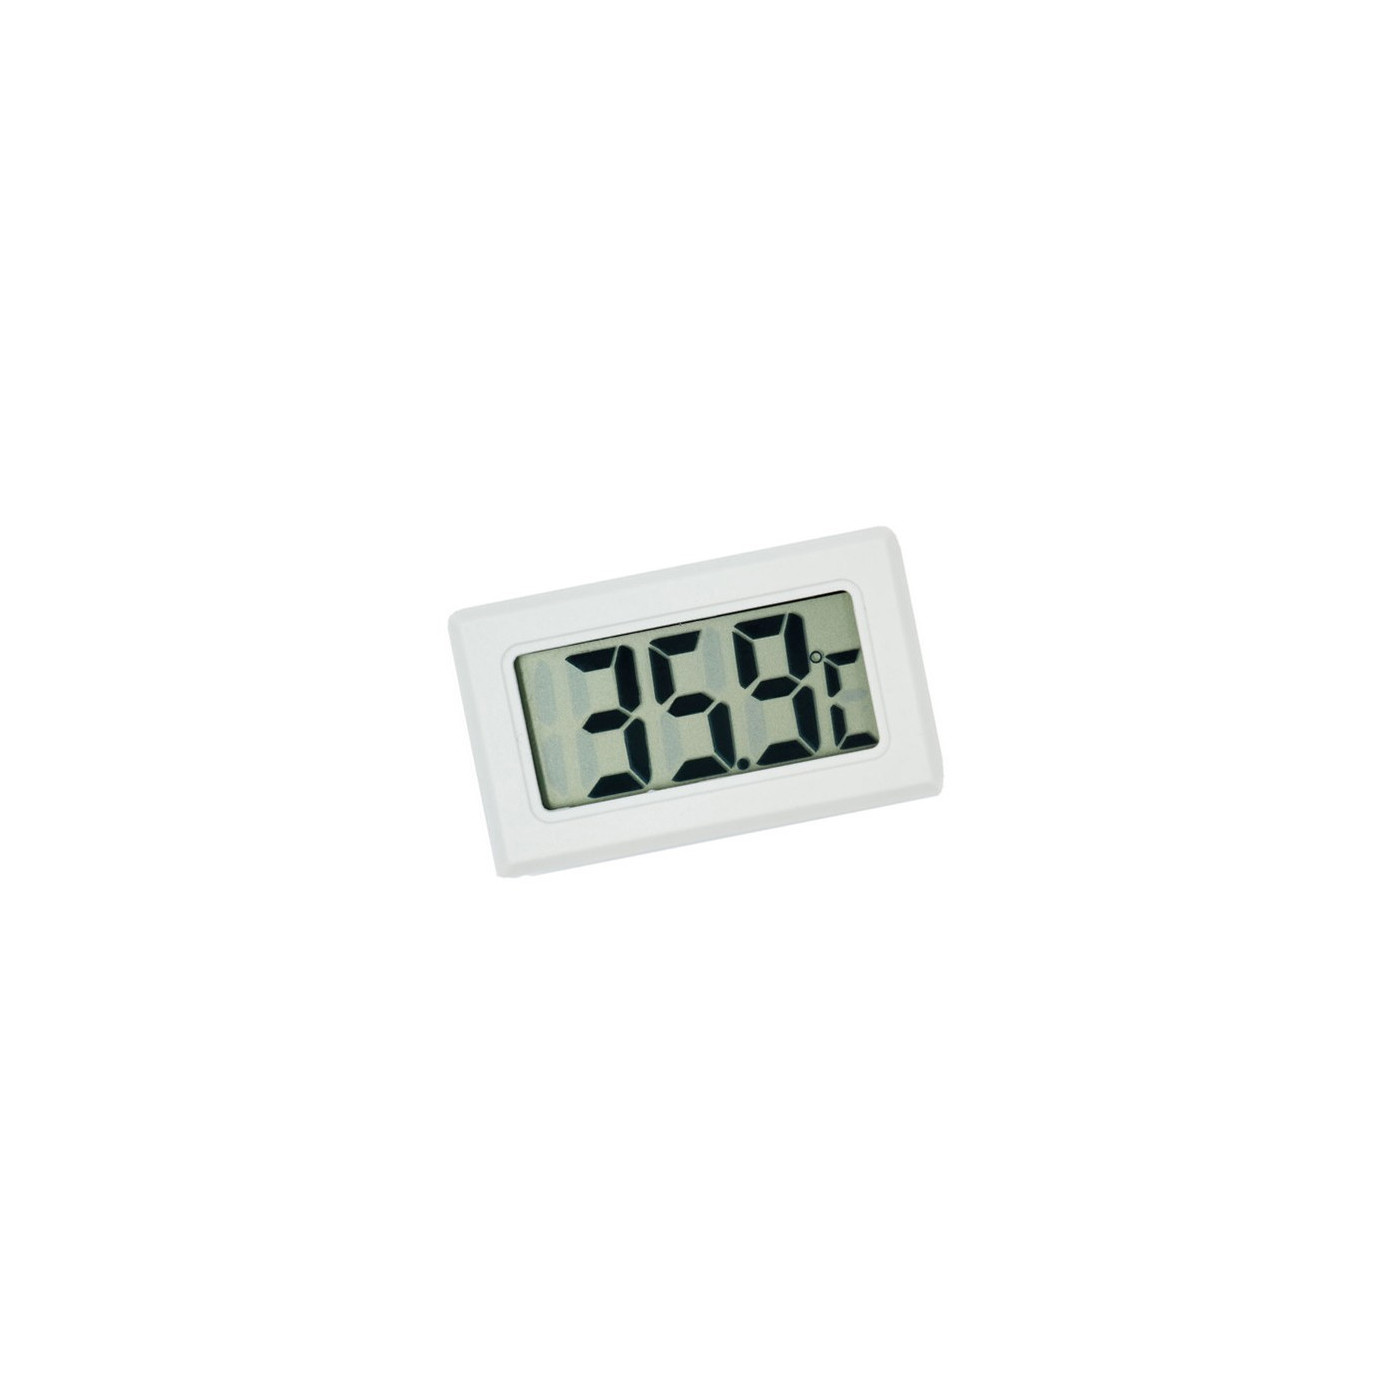 Miernik temperatury wewnętrznej LCD (biały)